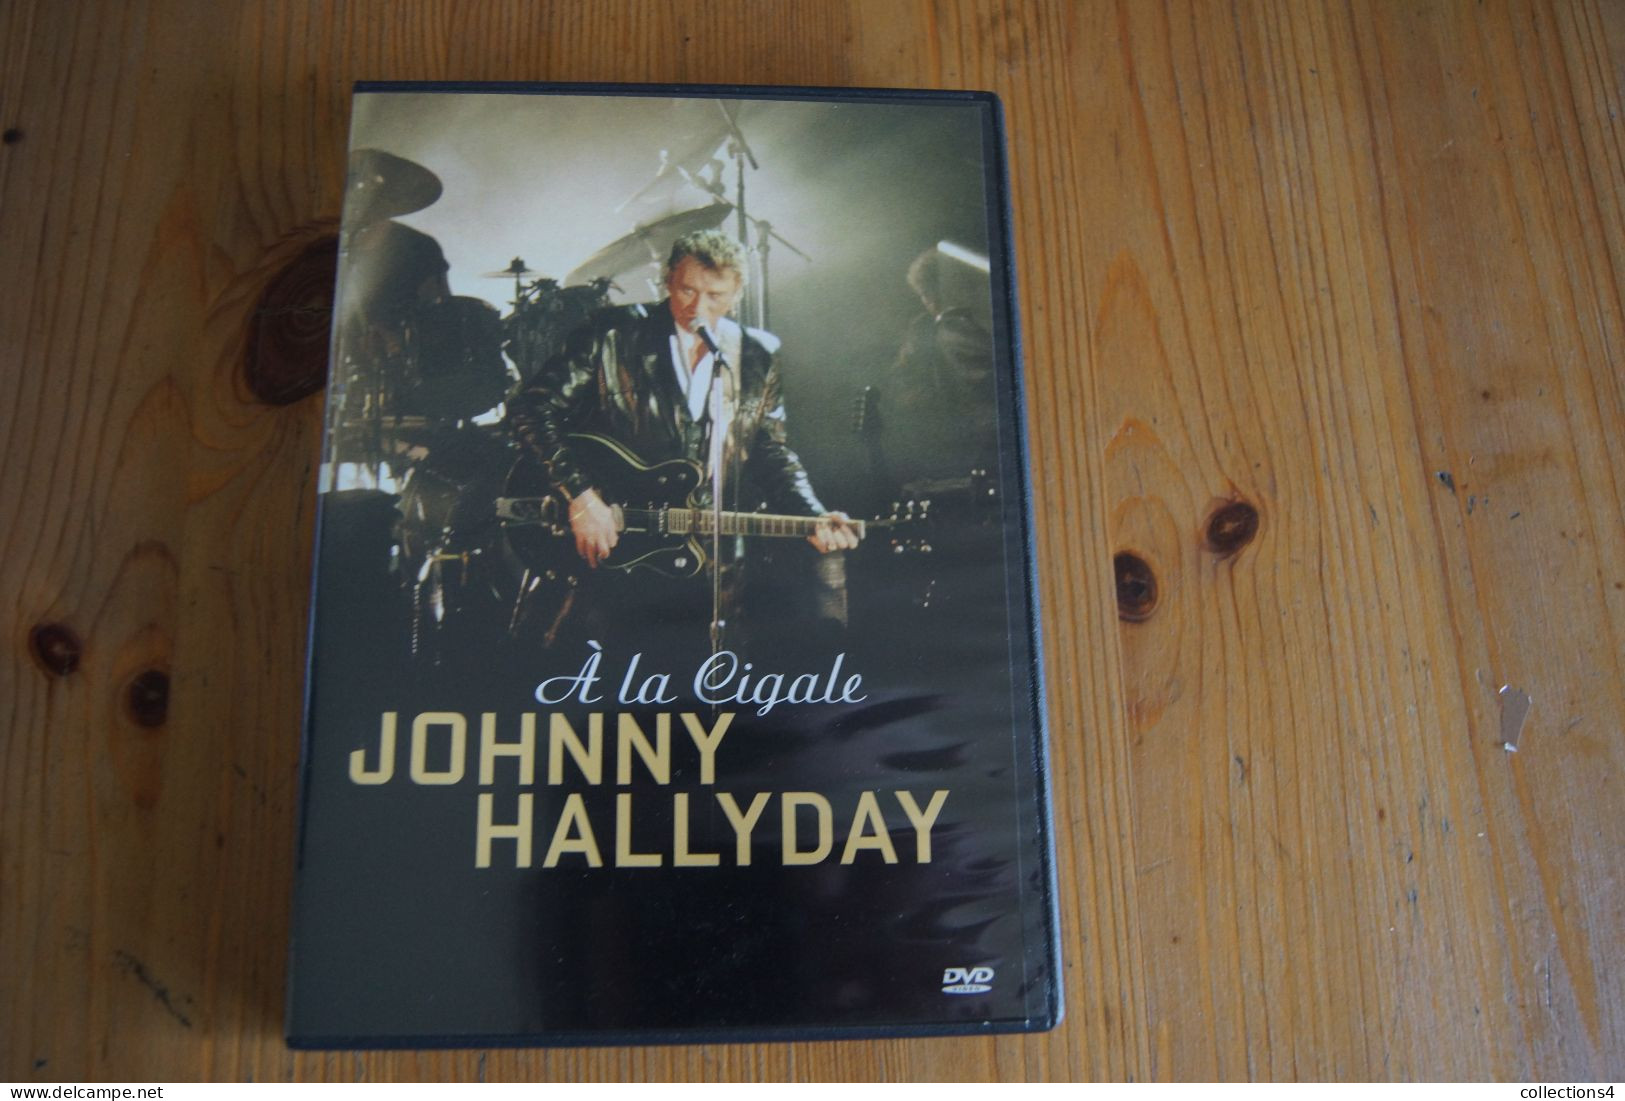 JOHNNY HALLYDAY A LA CIGALE   DVD   SORTIE 2004 - DVD Musicaux